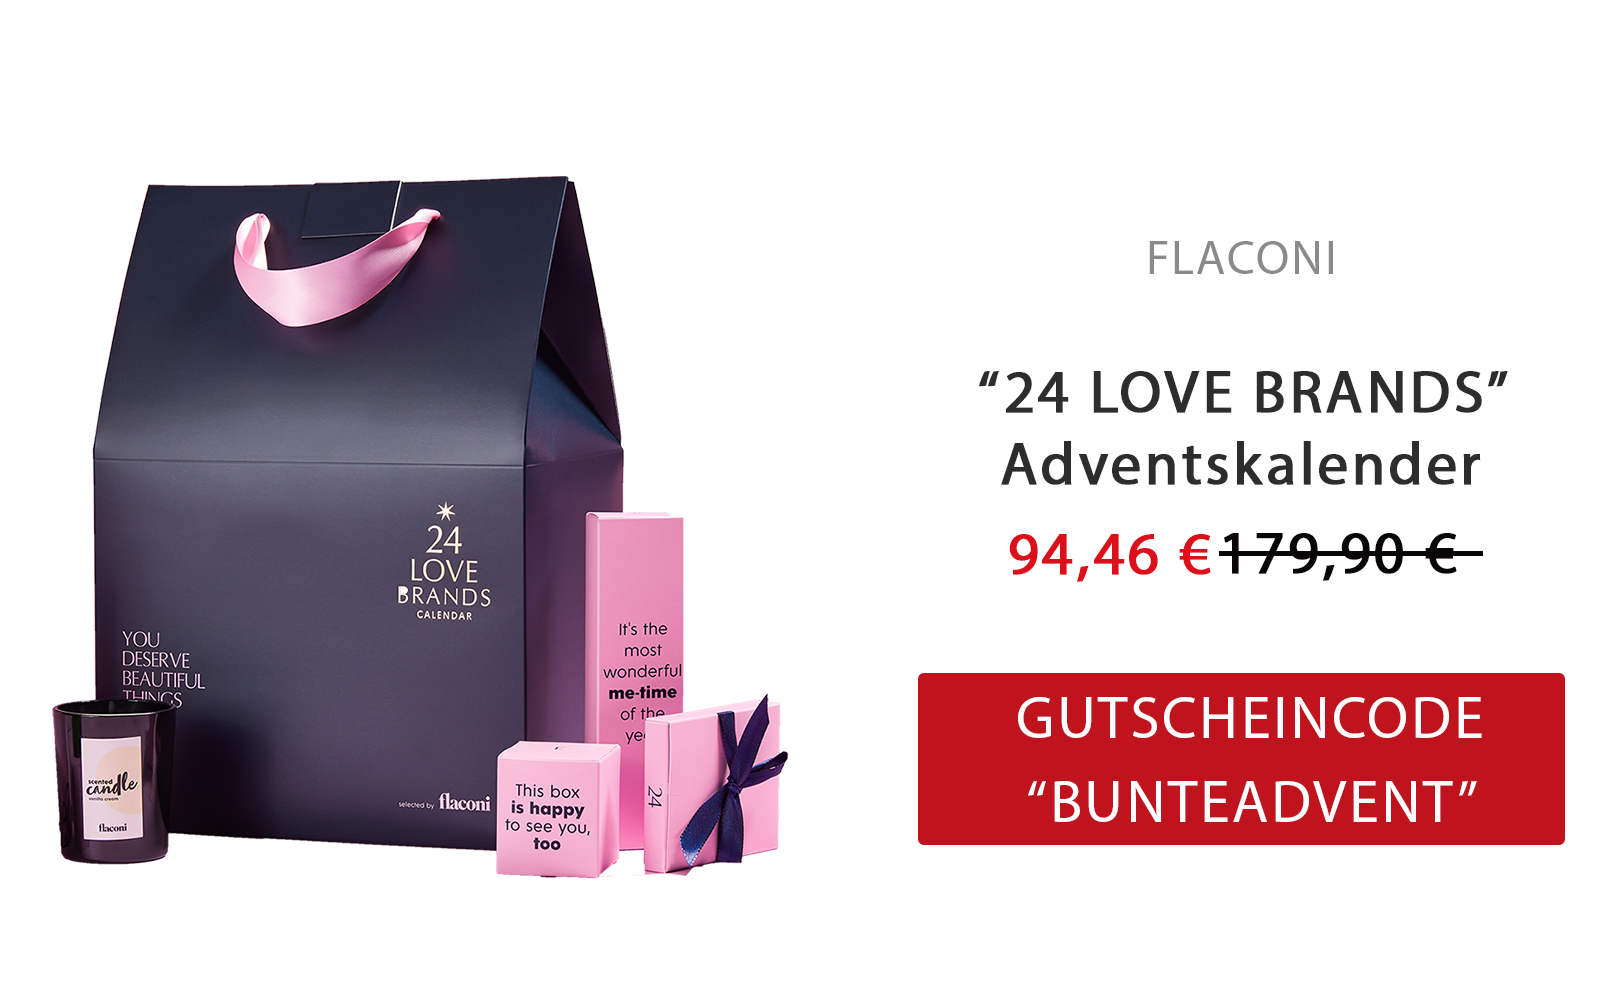 24 Love brands adventskalender flaconi